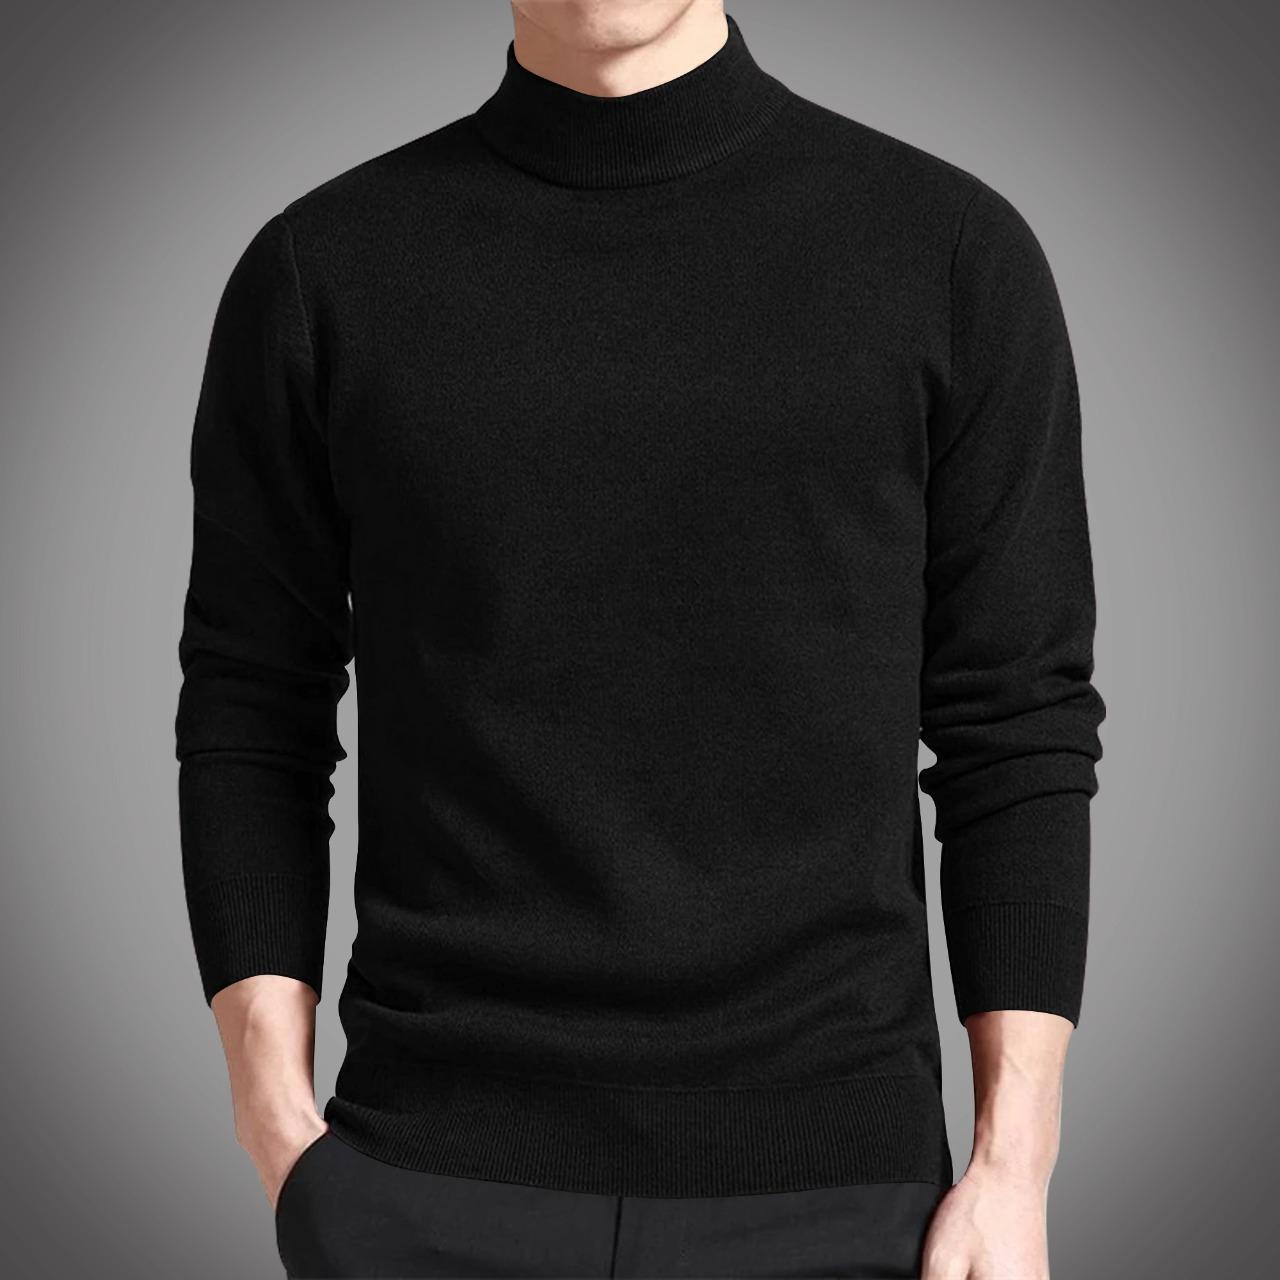 Cotton Full Sleeve Sweater for Men - GMS011